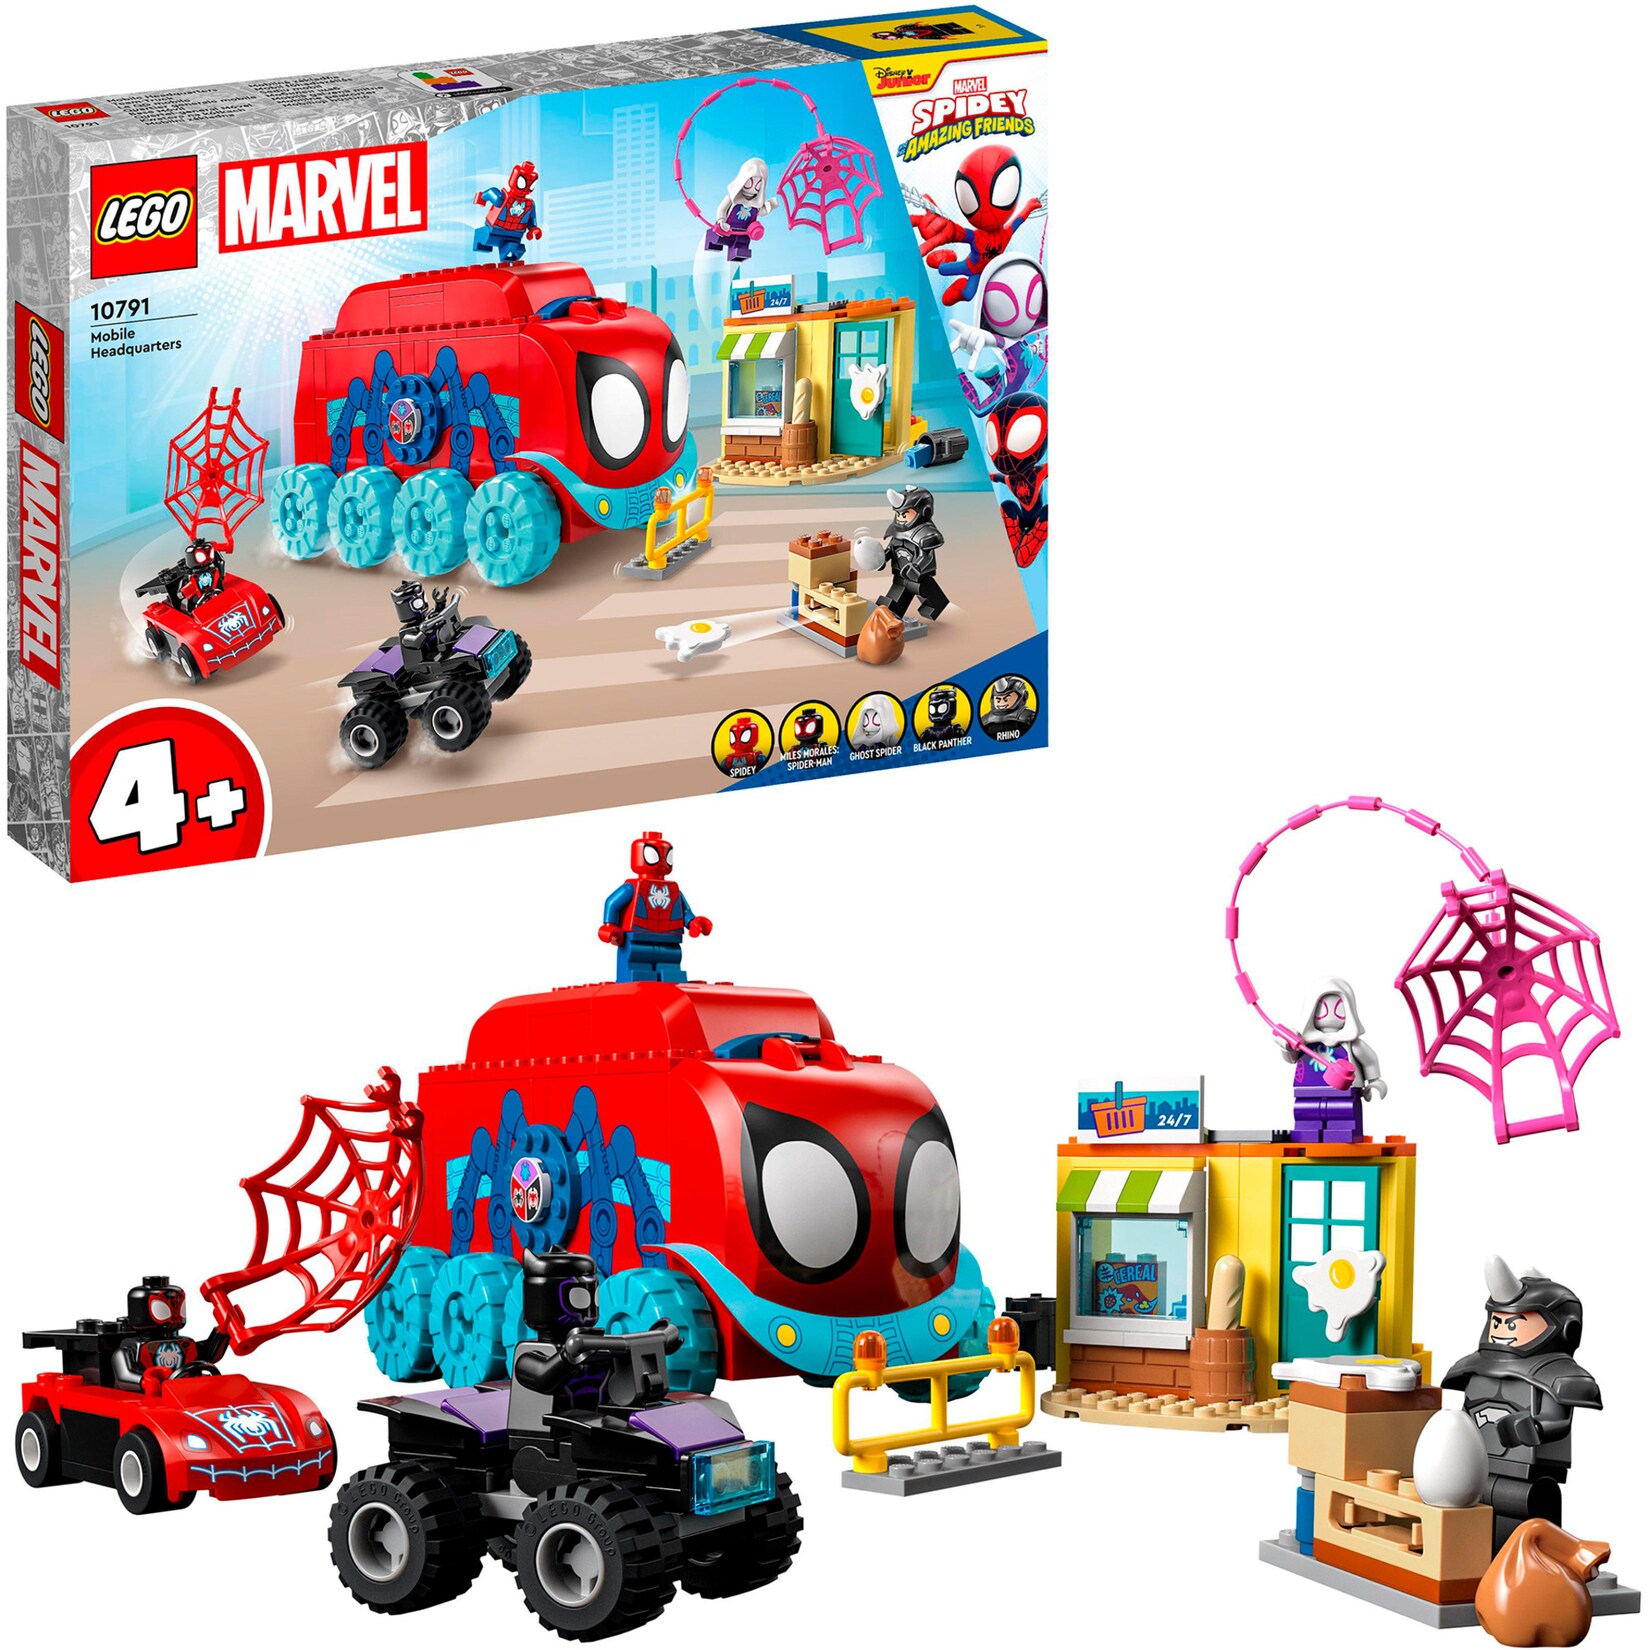 LEGO Konstruktionsspielzeug Marvel Spidey und seine Super-Freunde Spideys Team-Truck